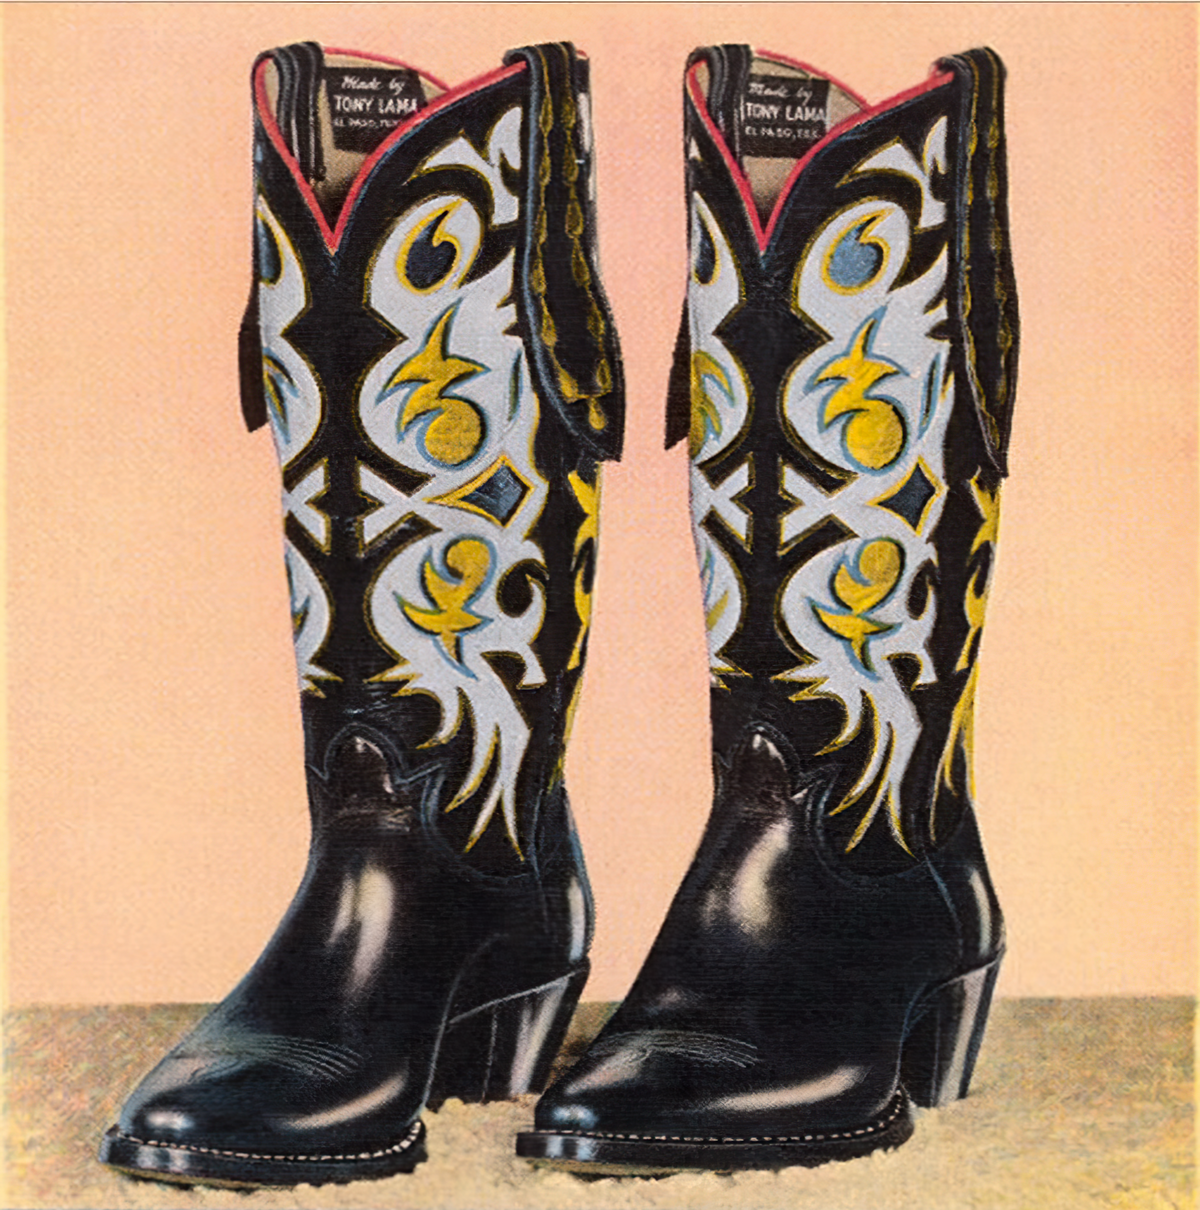 Cowboy boot - Wikipedia